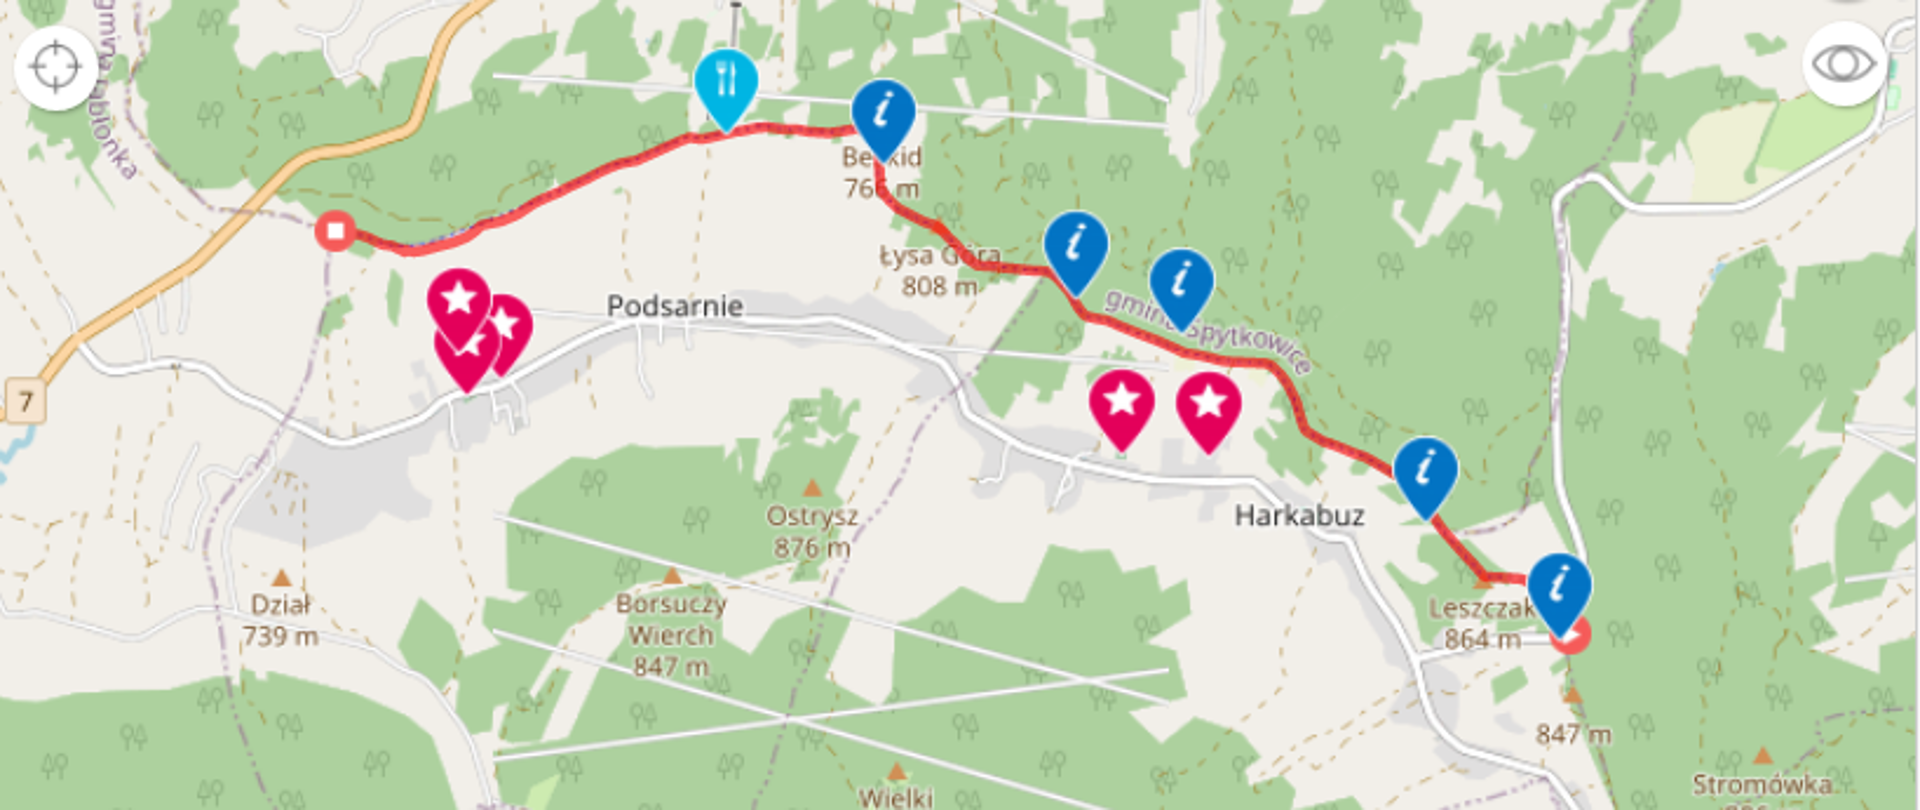 Zdjęcie przedstawiające trasę rowerowa zaczynająca się w Harkabuzie gdzie biegnie szczytami i kończy swój bieg na końcu miejscowości Podsarnie.